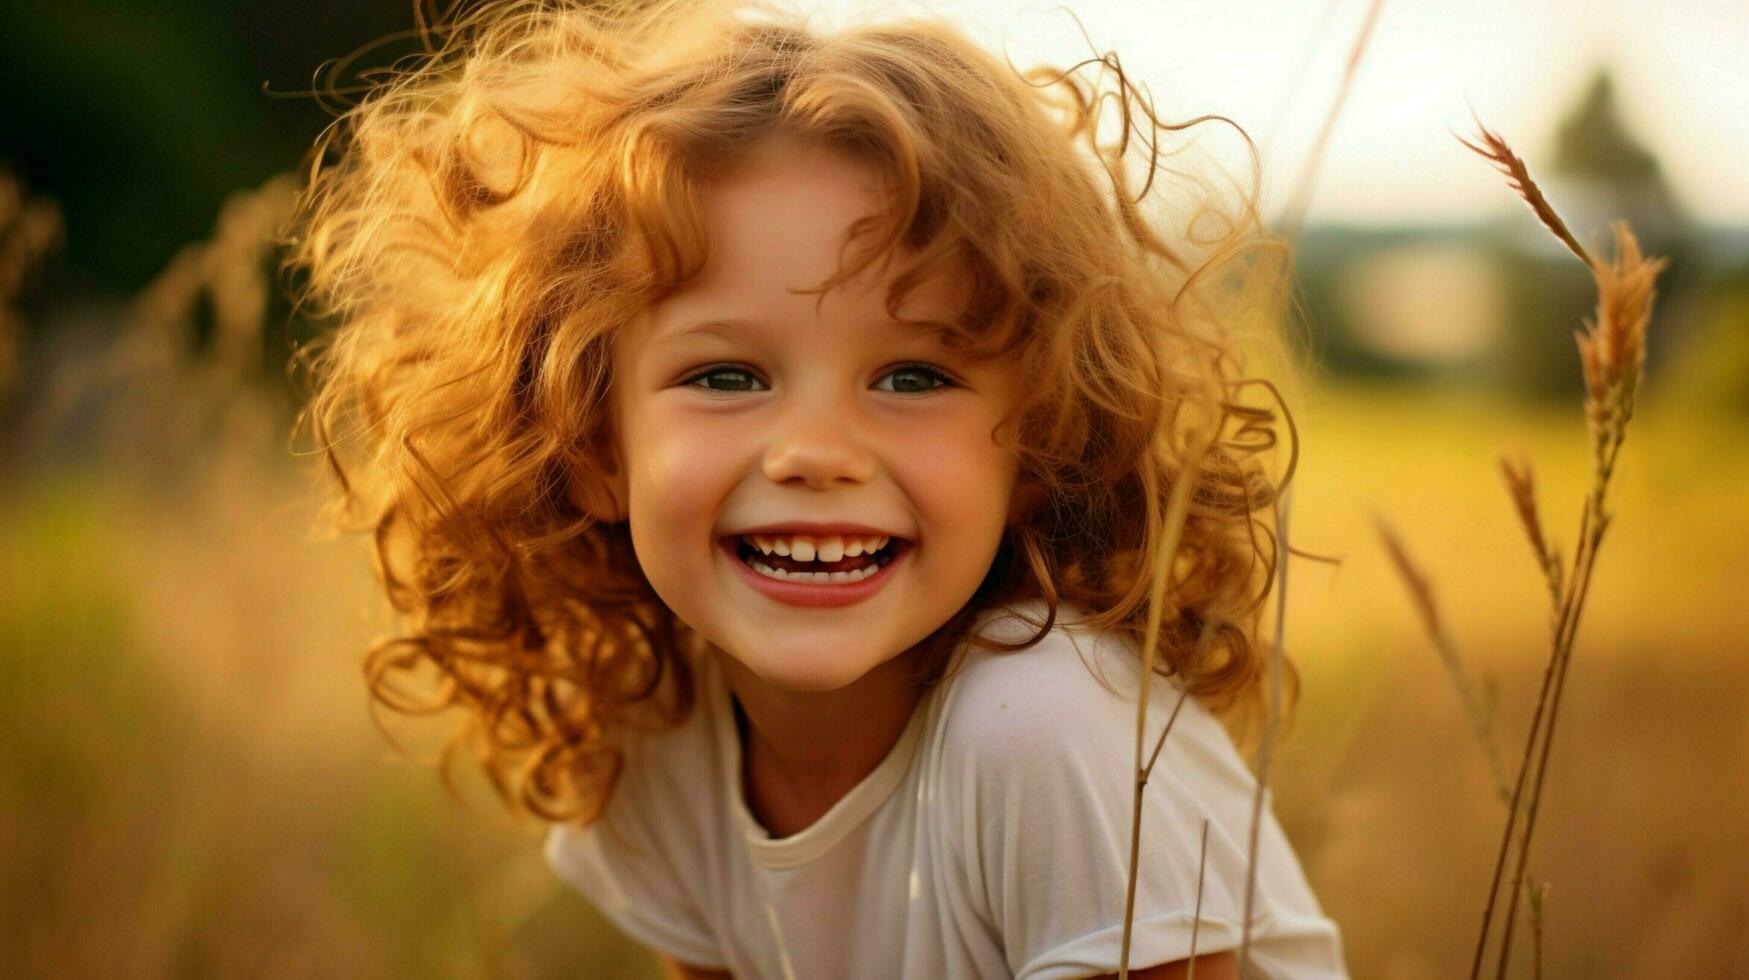 souriant enfant en plein air bonheur dans la nature mignonne portrait photo